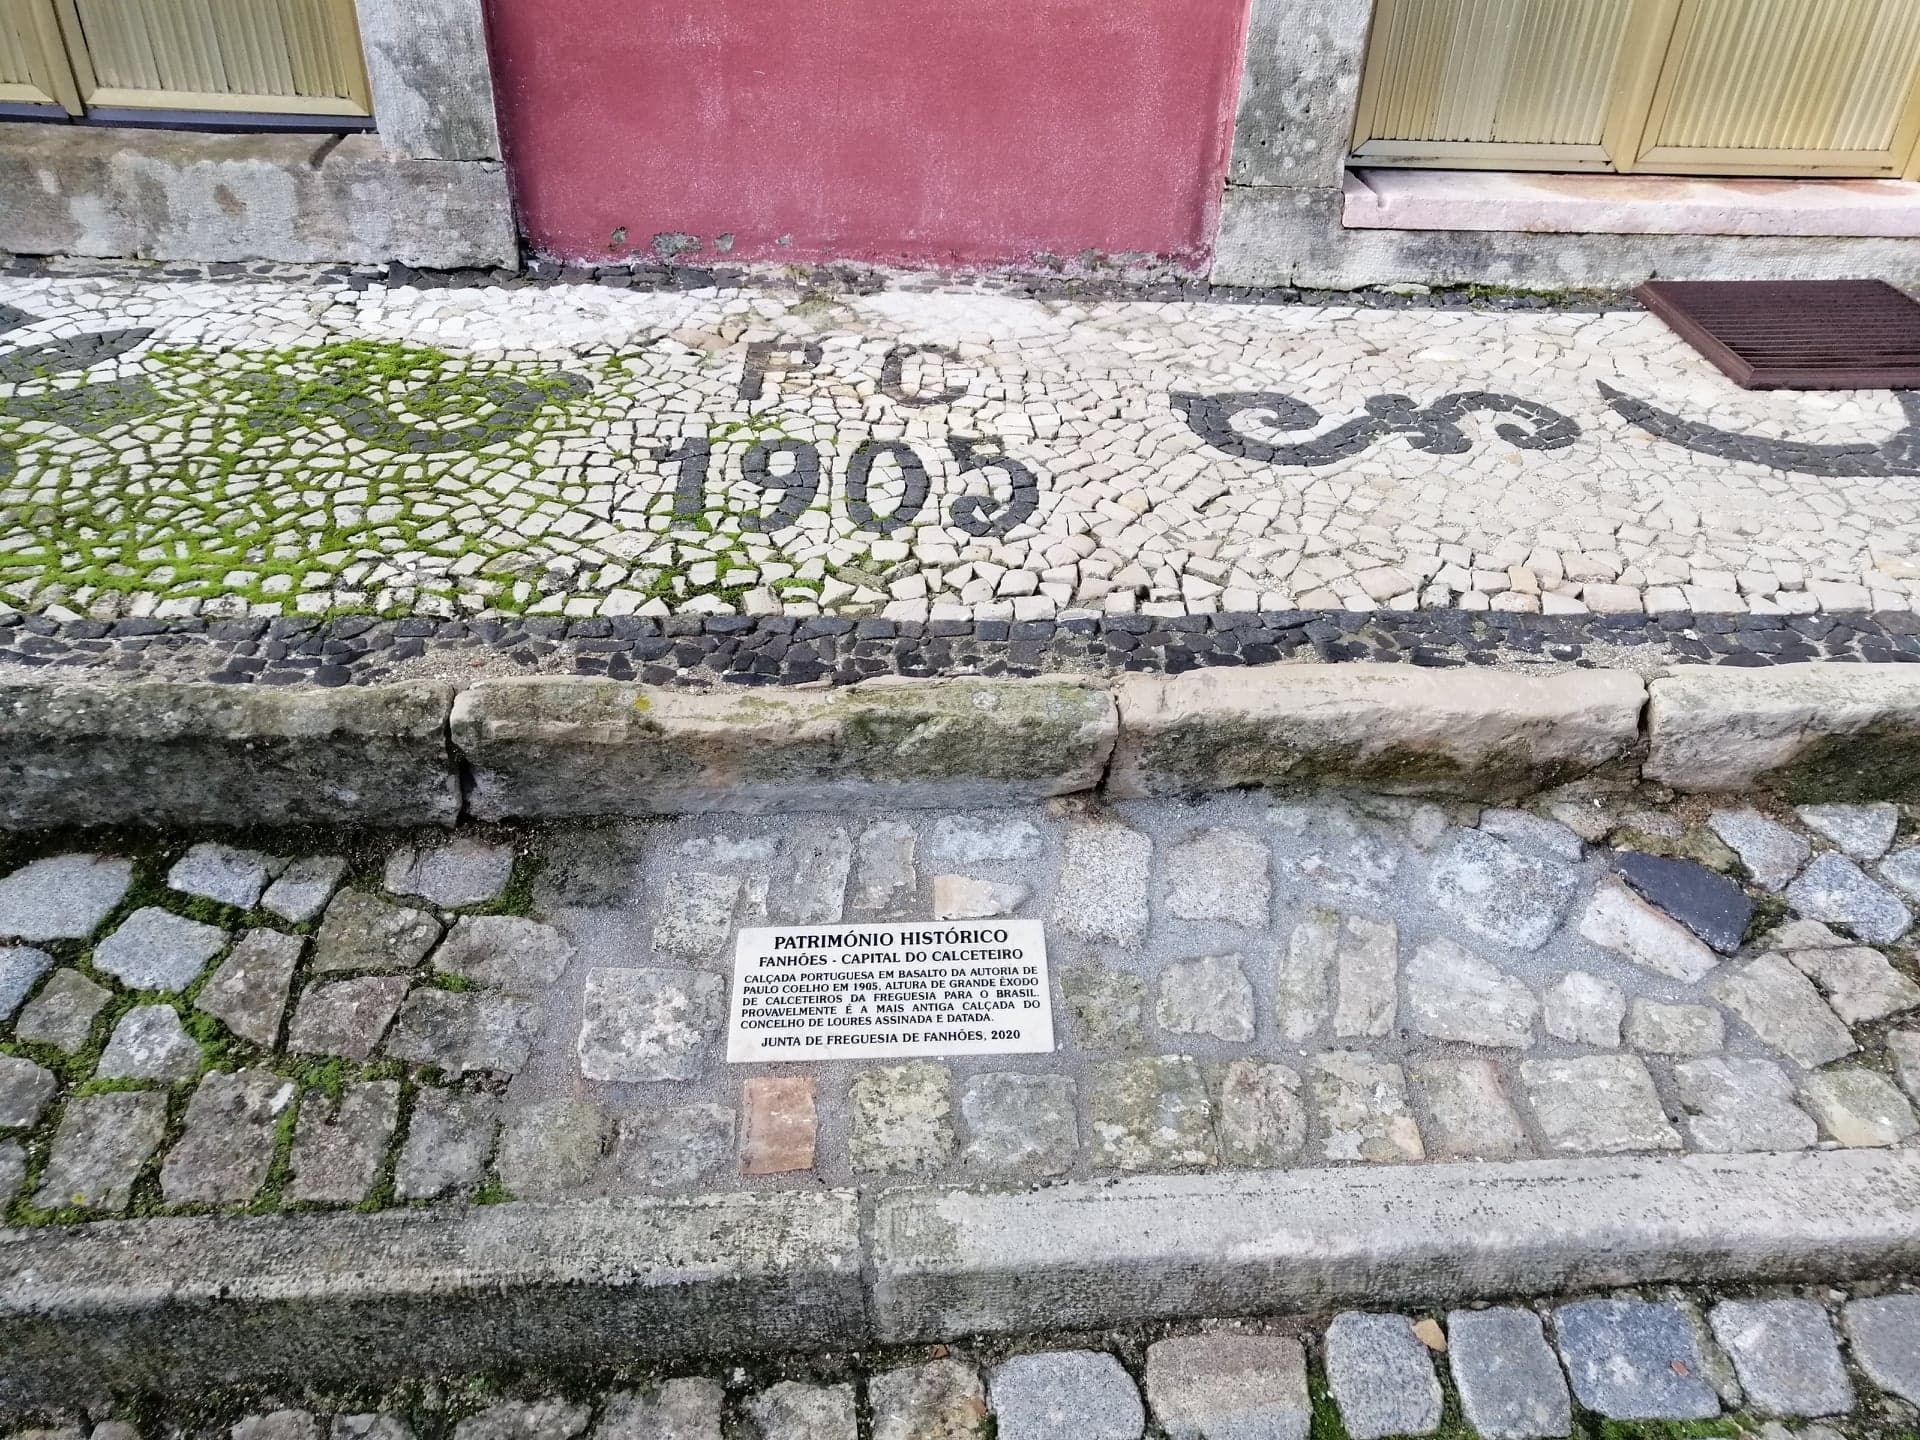 Fanhões -(f) Fanhões Capital do Calceteiro – Identificação da Calçada que é provavelmente a mais antiga do Concelho, datada de 1905 e da autoria de Paulo Coelho com a colocação de uma placa em pedra Lioz!